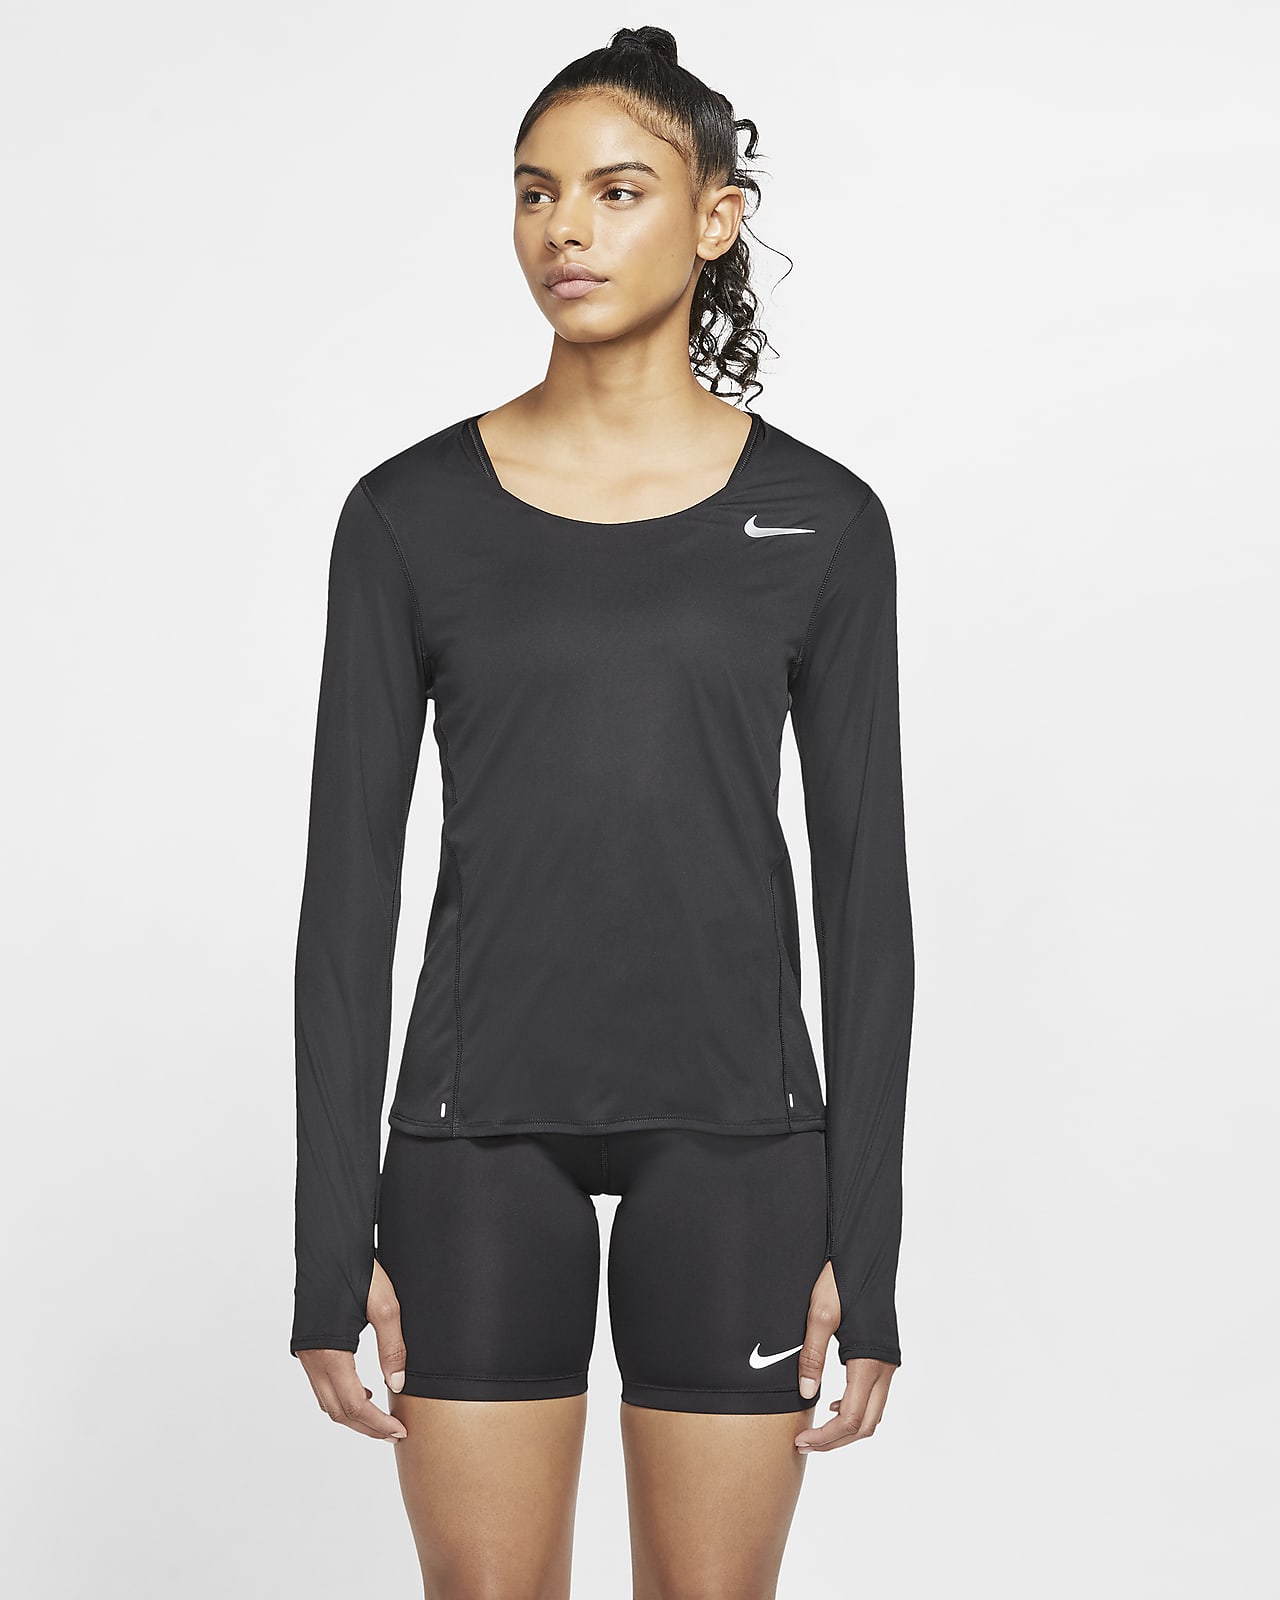 Long-Sleeve Running Top. Nike JP